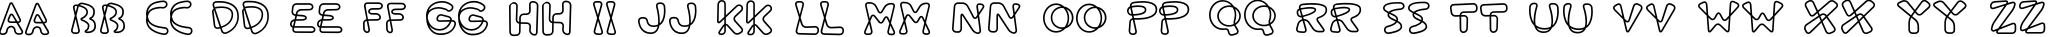 Пример написания английского алфавита шрифтом ShoeStringRound